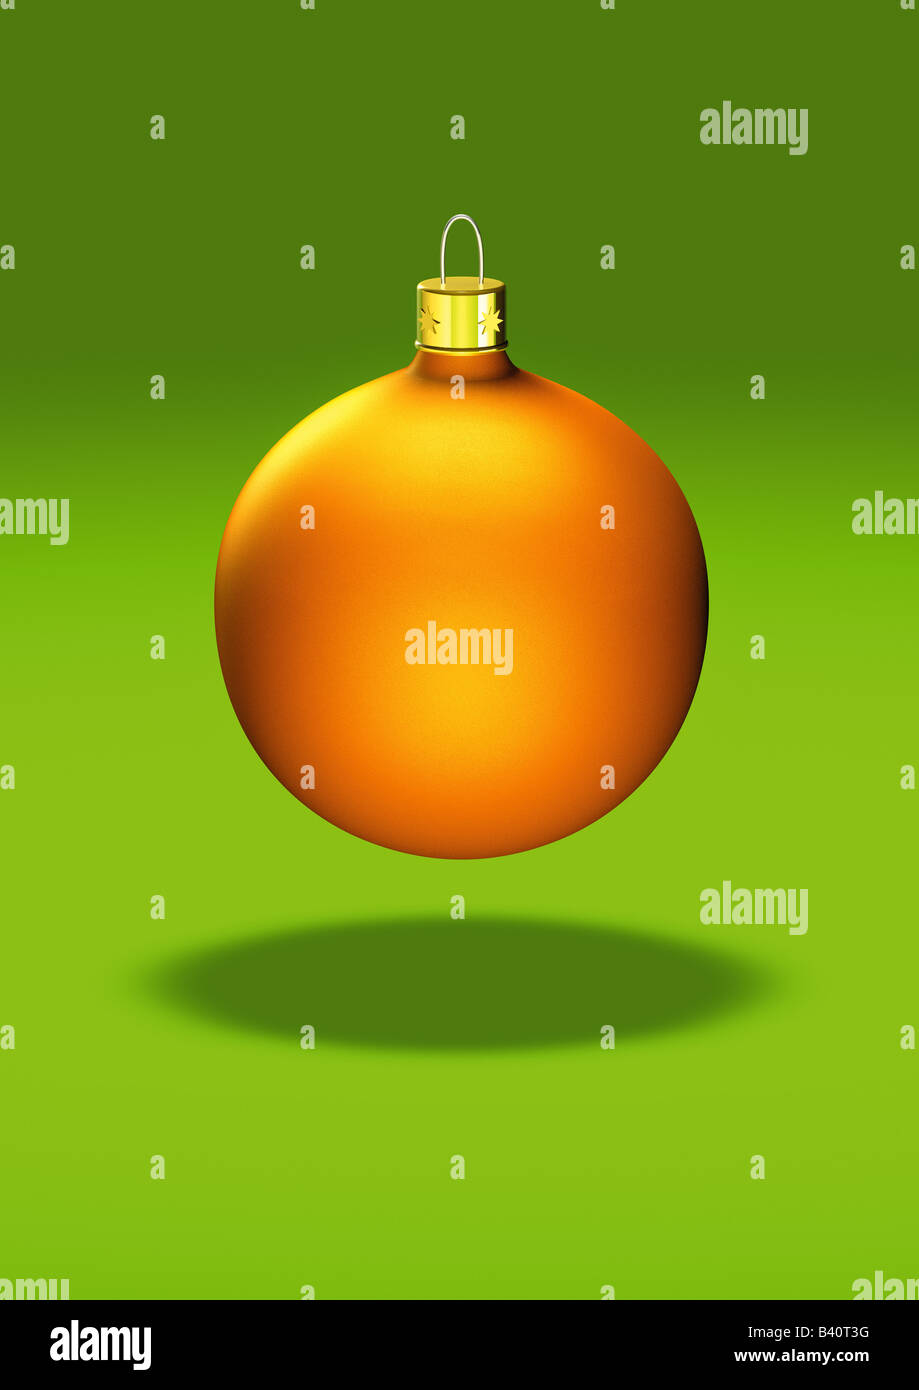 Amarillo sobre verde bolas de navidad ornamento backgrund gelbe Christbaumkugel auf gruenem Hintergrund Foto de stock